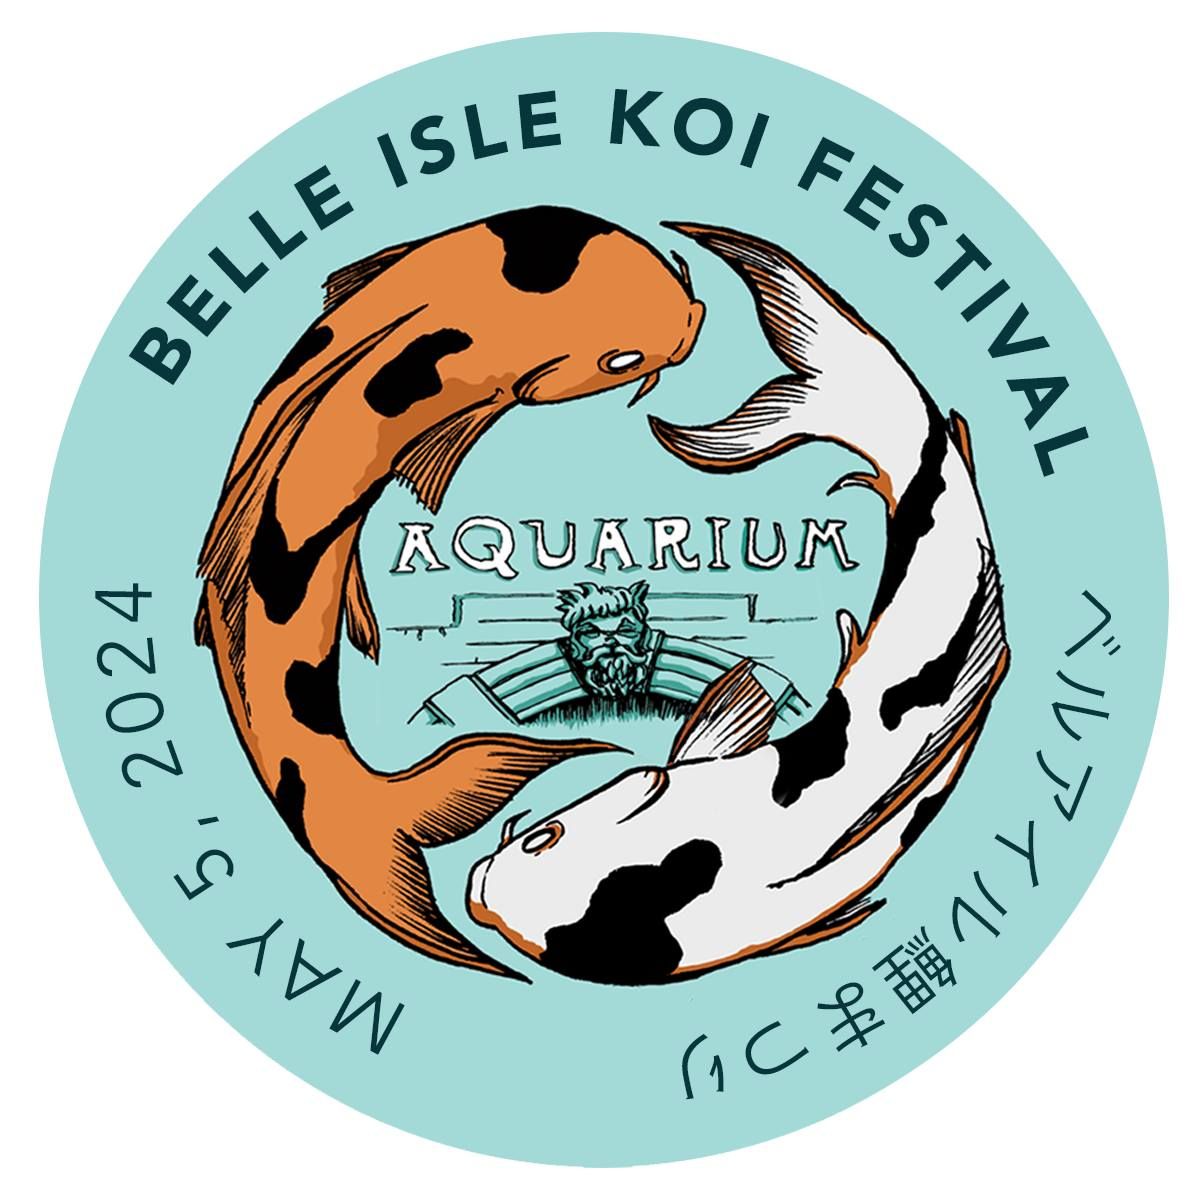 Belle Isle Koi Festival